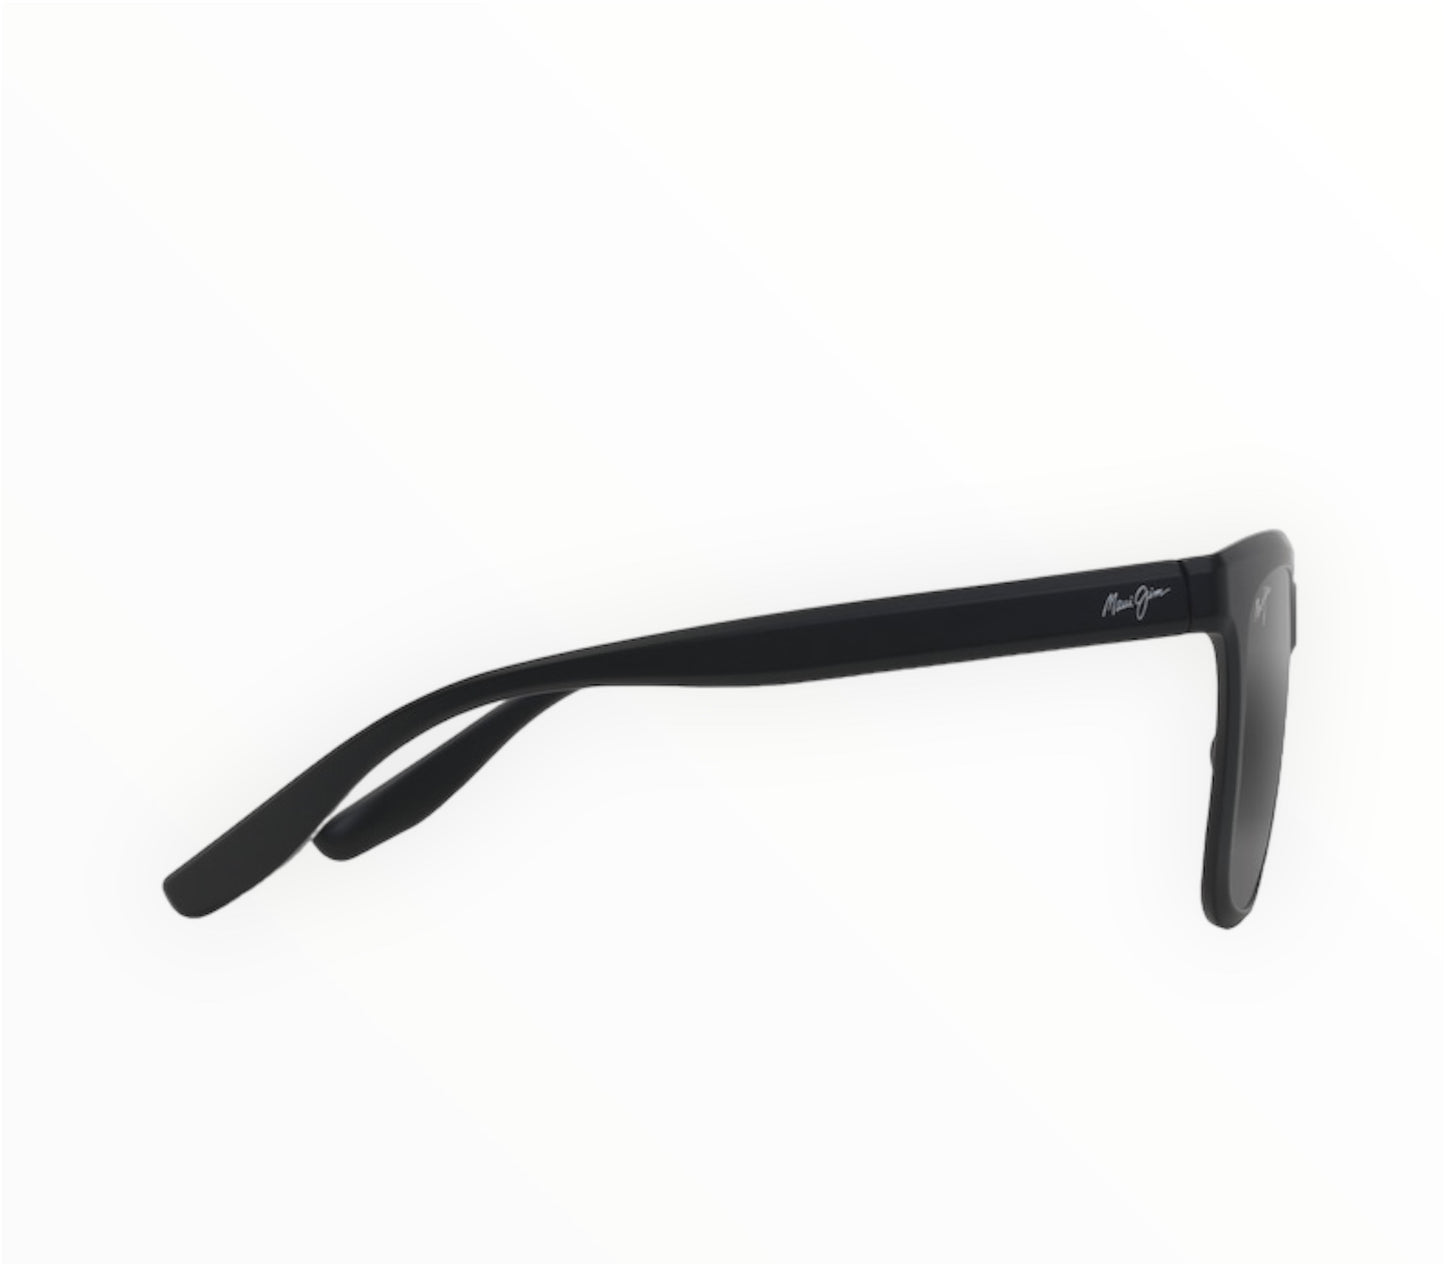 Maui Jim Polarized Sunglasses